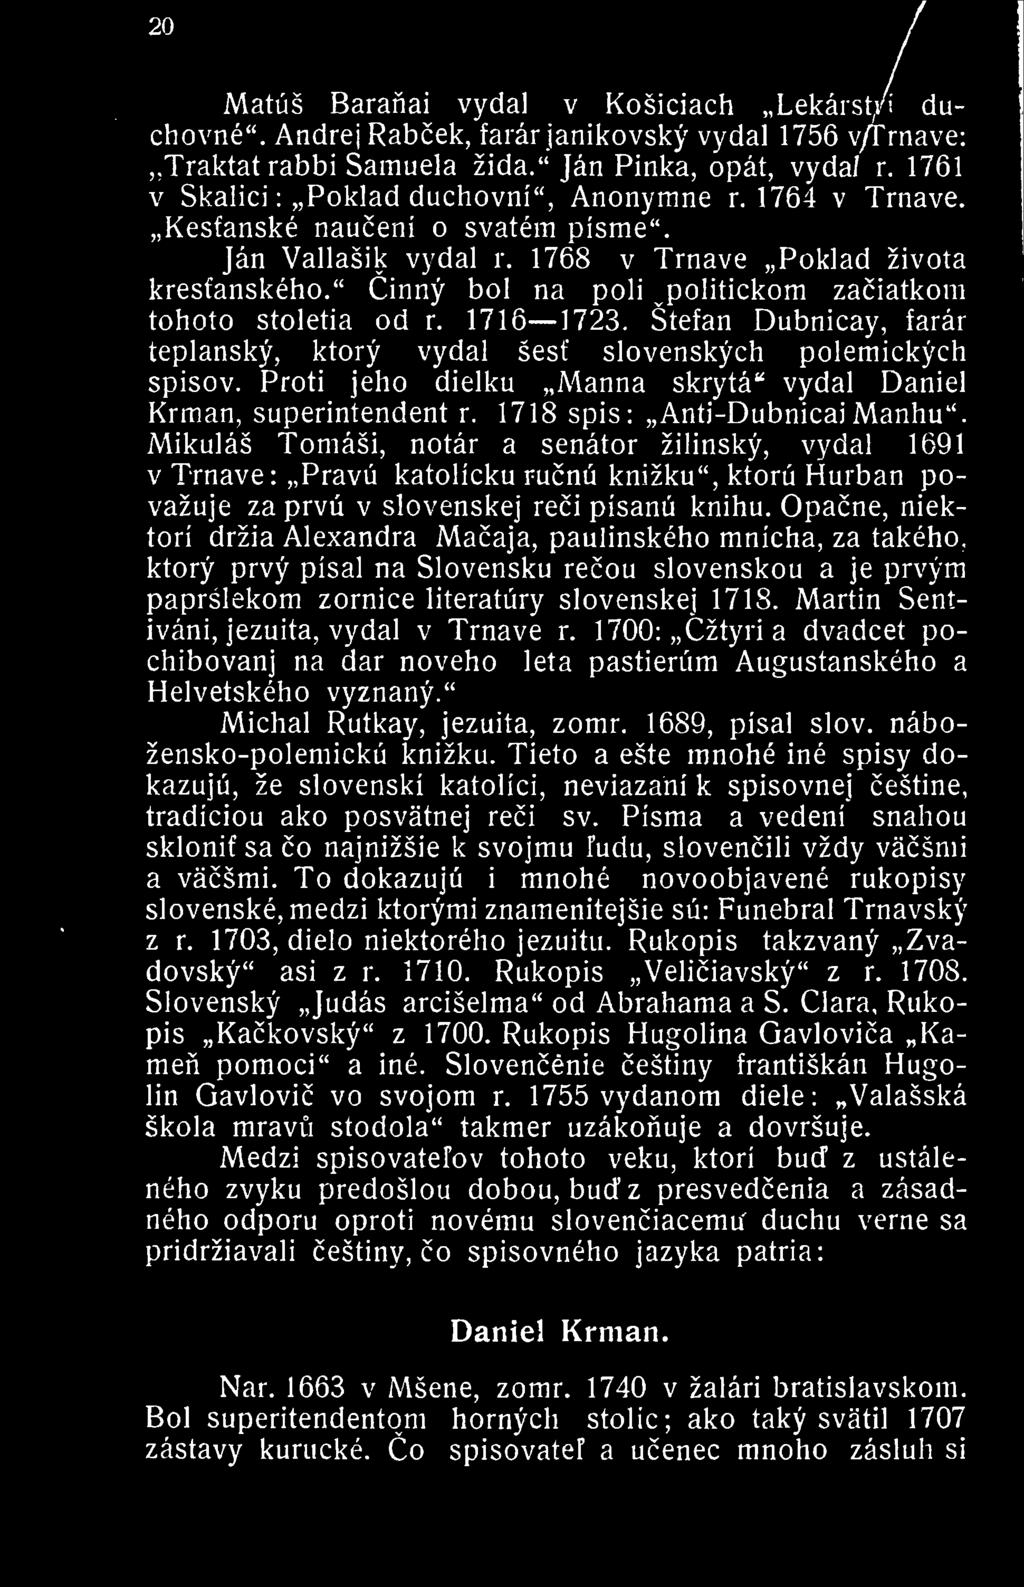 " Cinny bol na poll ^politickom zaciatkom tohoto stoletia od r. 1716 1723. Stefan Dubnicay. farar teplansky, ktory vydal sesf slovenskych polemickych spisov.